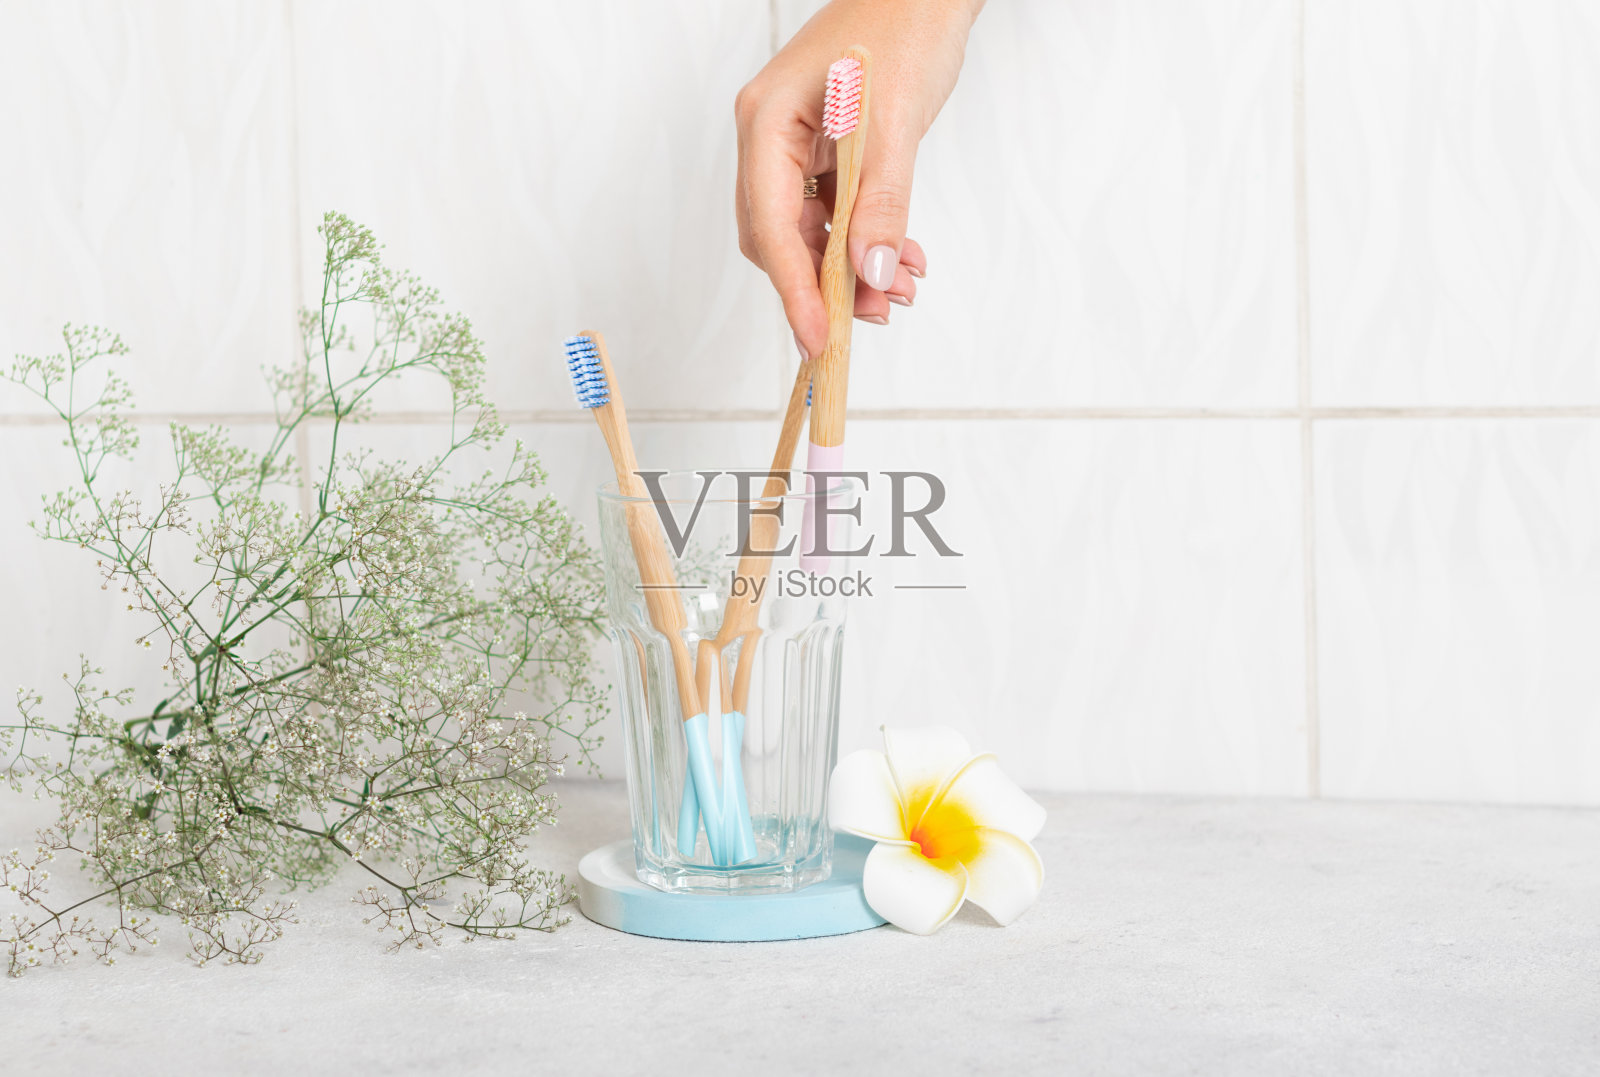 浴室里的玻璃杯子里装着崭新的粉色和蓝色木制竹制牙刷。早上，女性的手拿起一支粉蓝相间的牙刷。可生物降解的个人护理产品。没有塑料的概念。Plumeria照片摄影图片